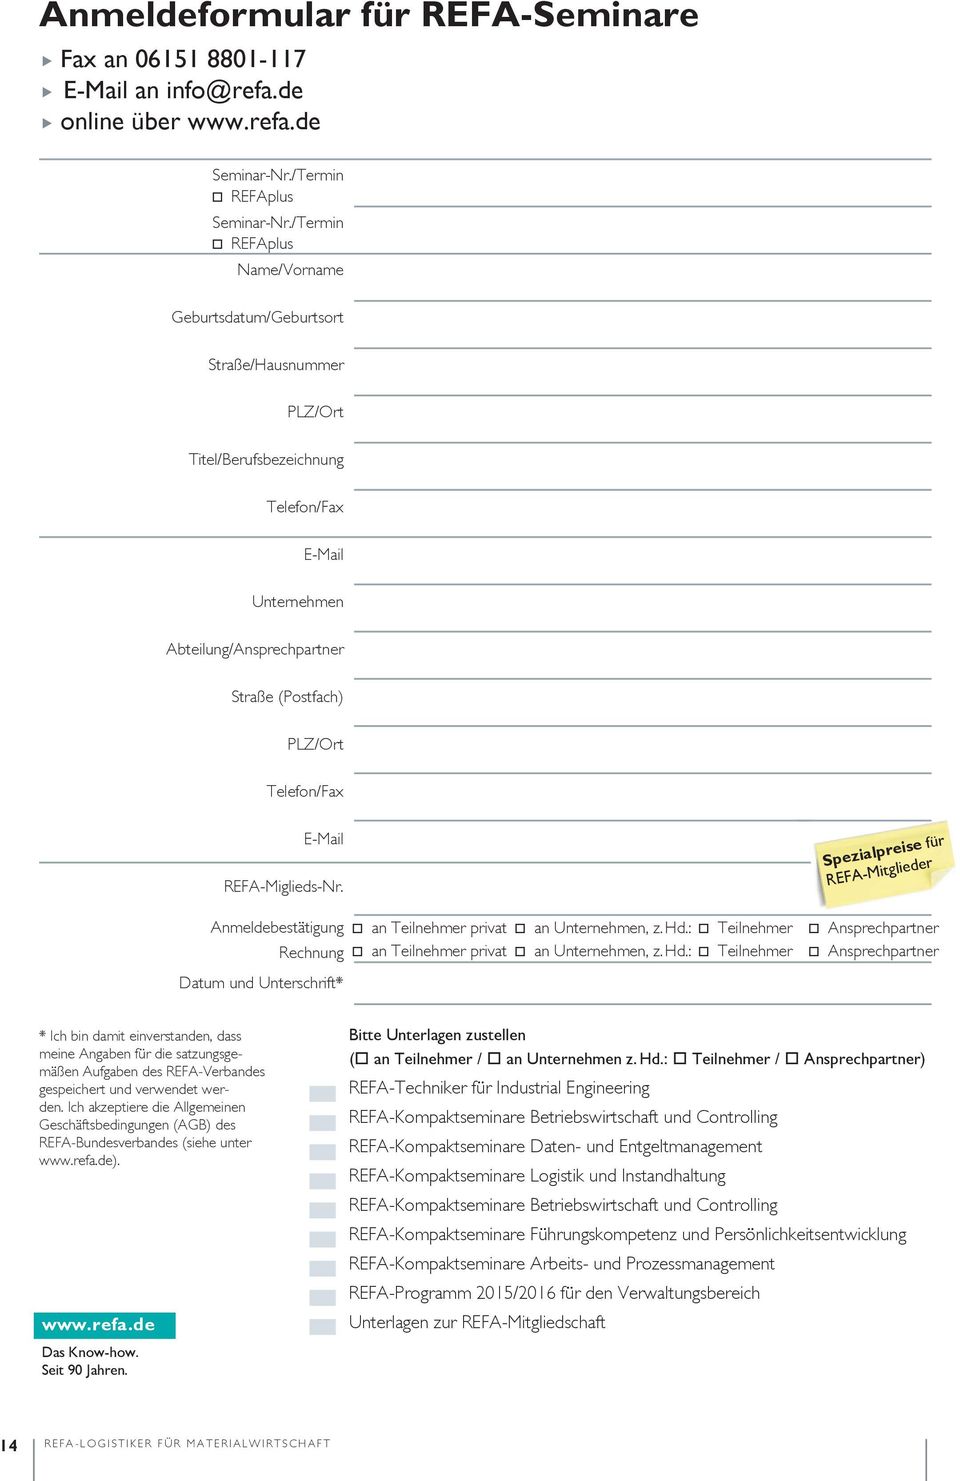 E-Mail REFA-Miglieds-Nr. Anmeldebestätigung Rechnung Datum und Unterschrift* an Teilnehmer privat an Unternehmen, z. Hd.